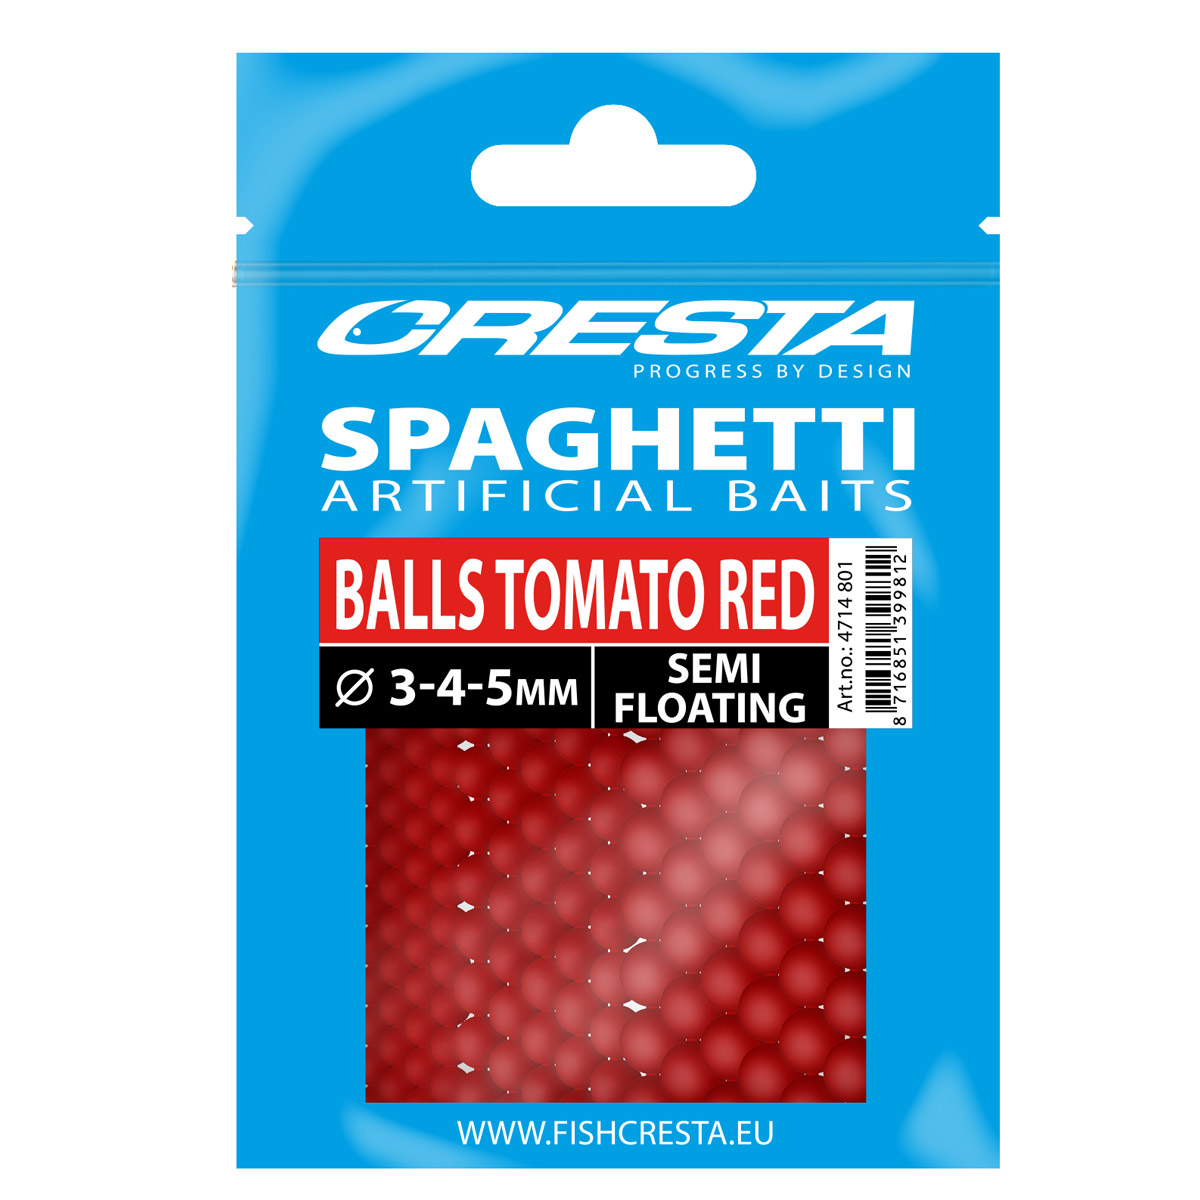 Spro Cresta Spaghetti Balls